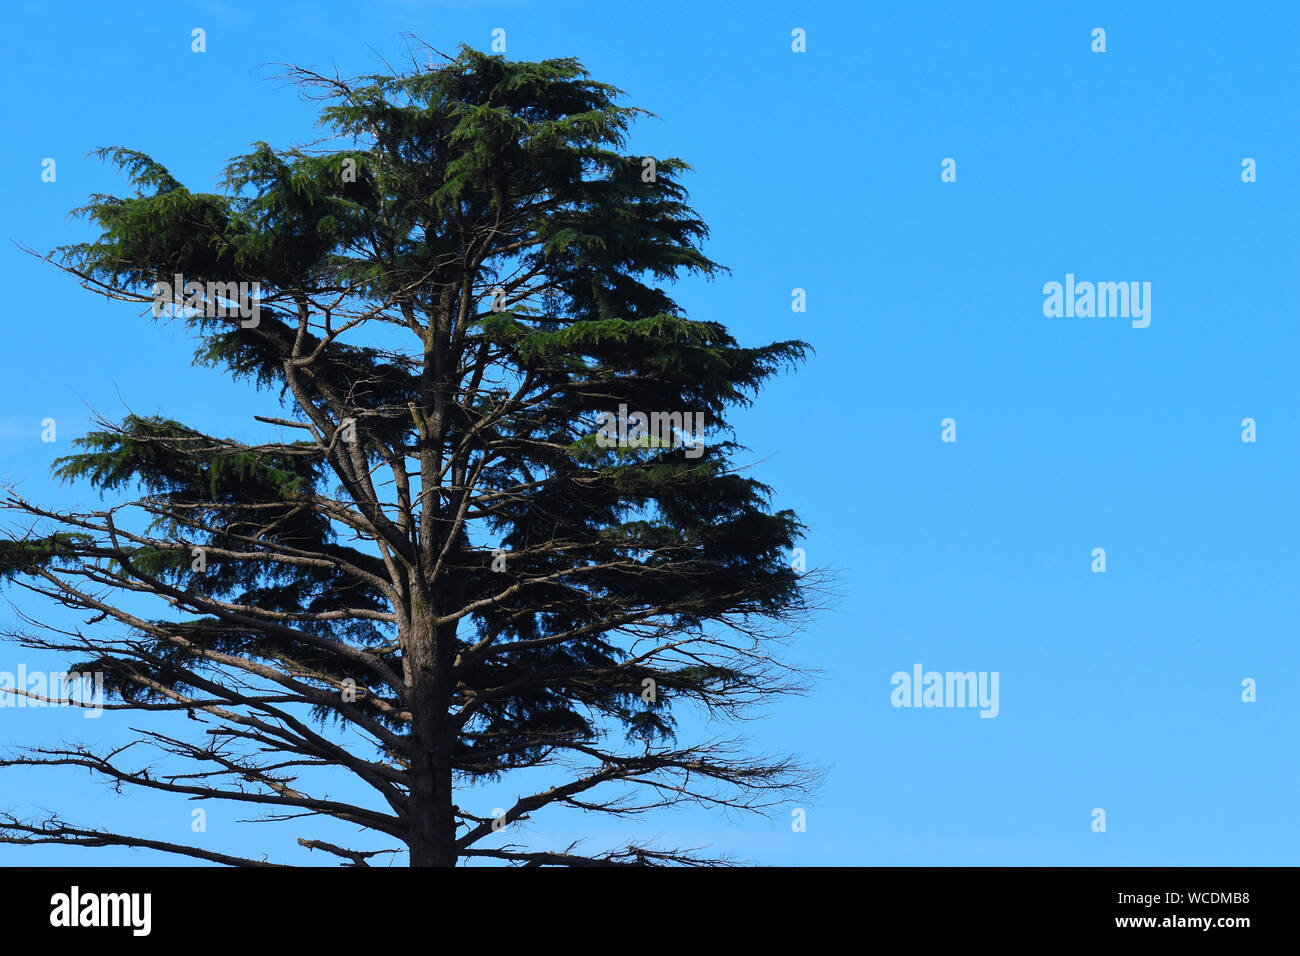 The Deodar Cedar tree against a blue sky. Stock Photo